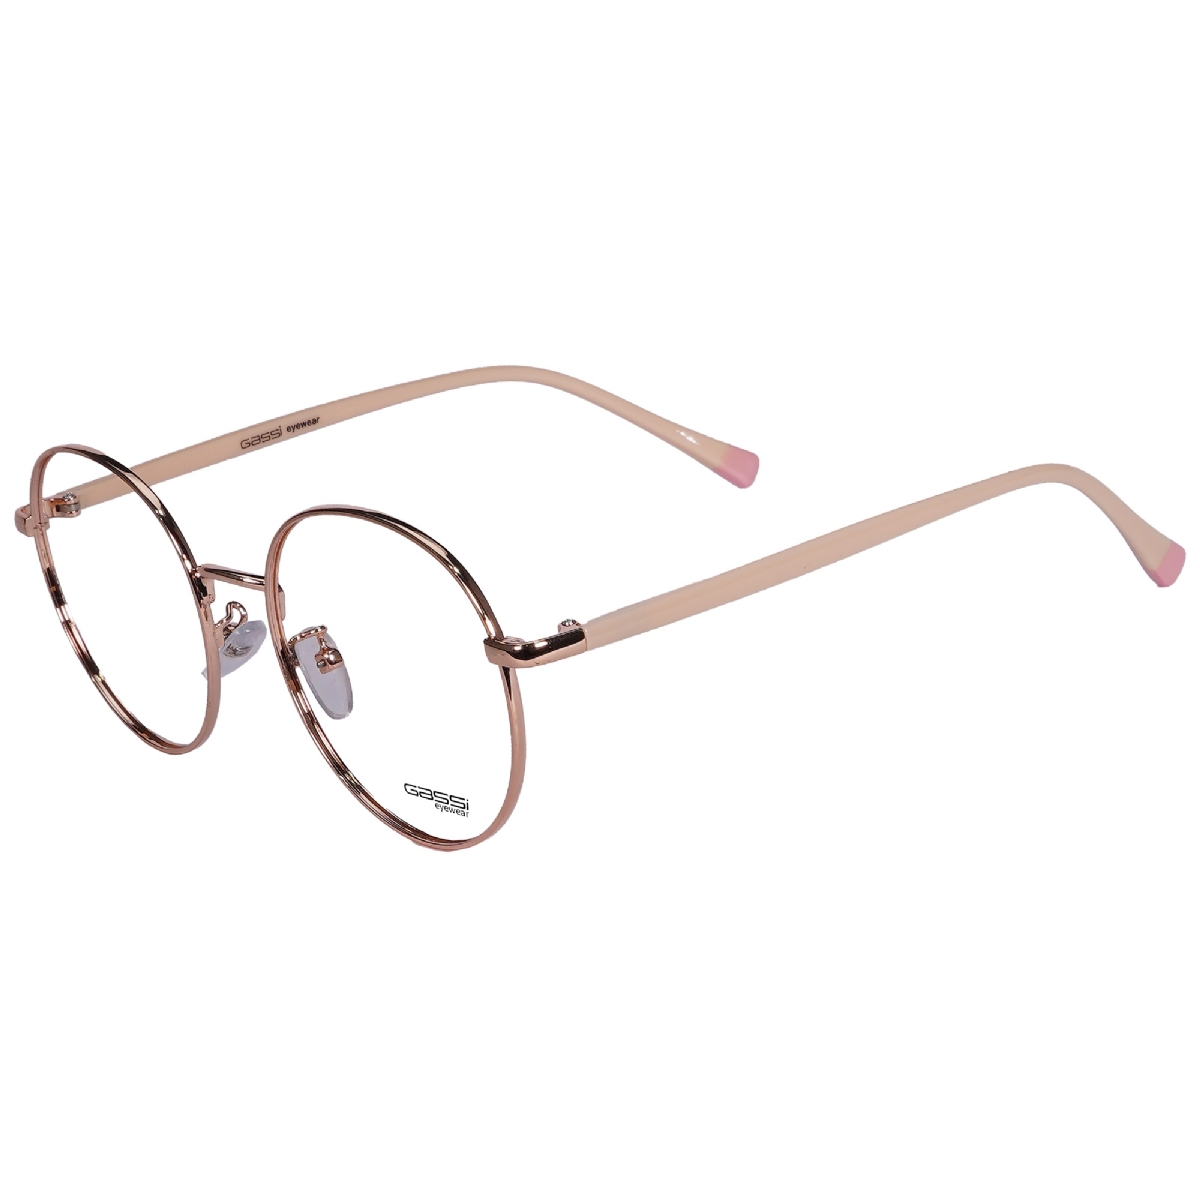 Óculos de grau Gassi Teens - Dourado/Rosa claro